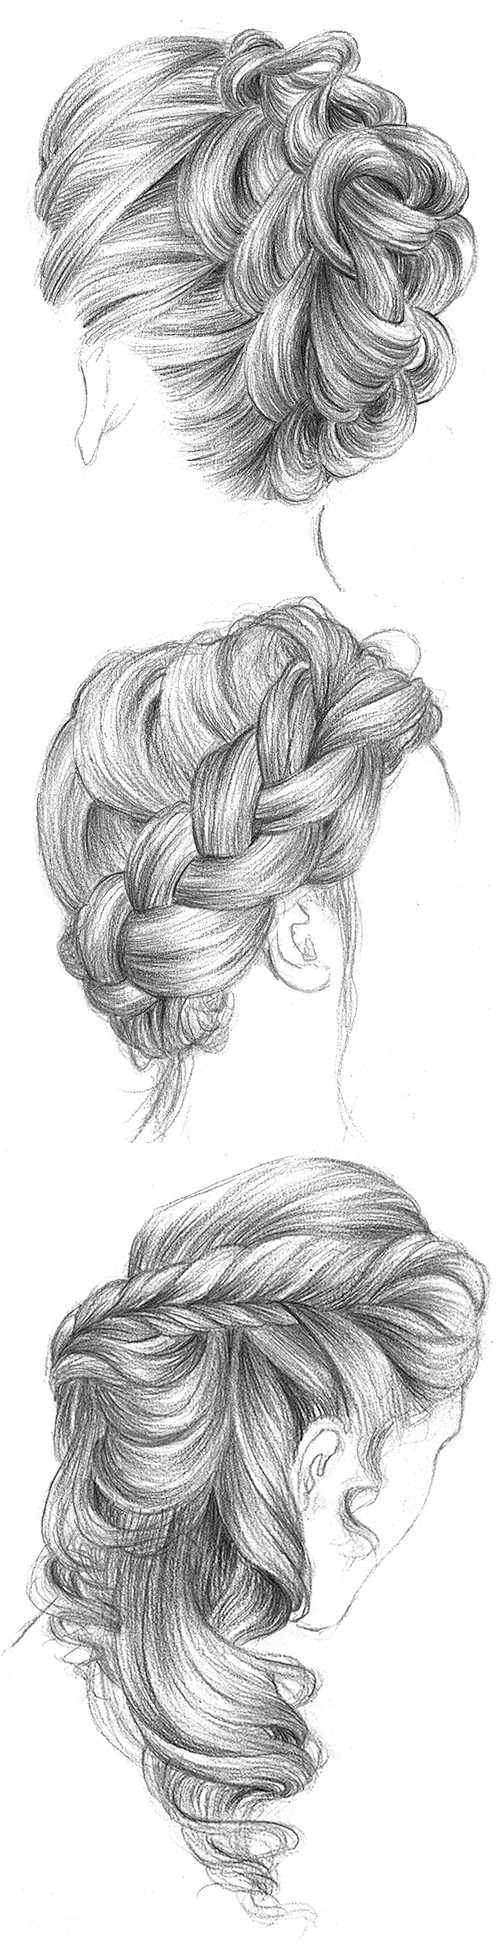 漂亮的黑白手绘女性发型插画封面大图